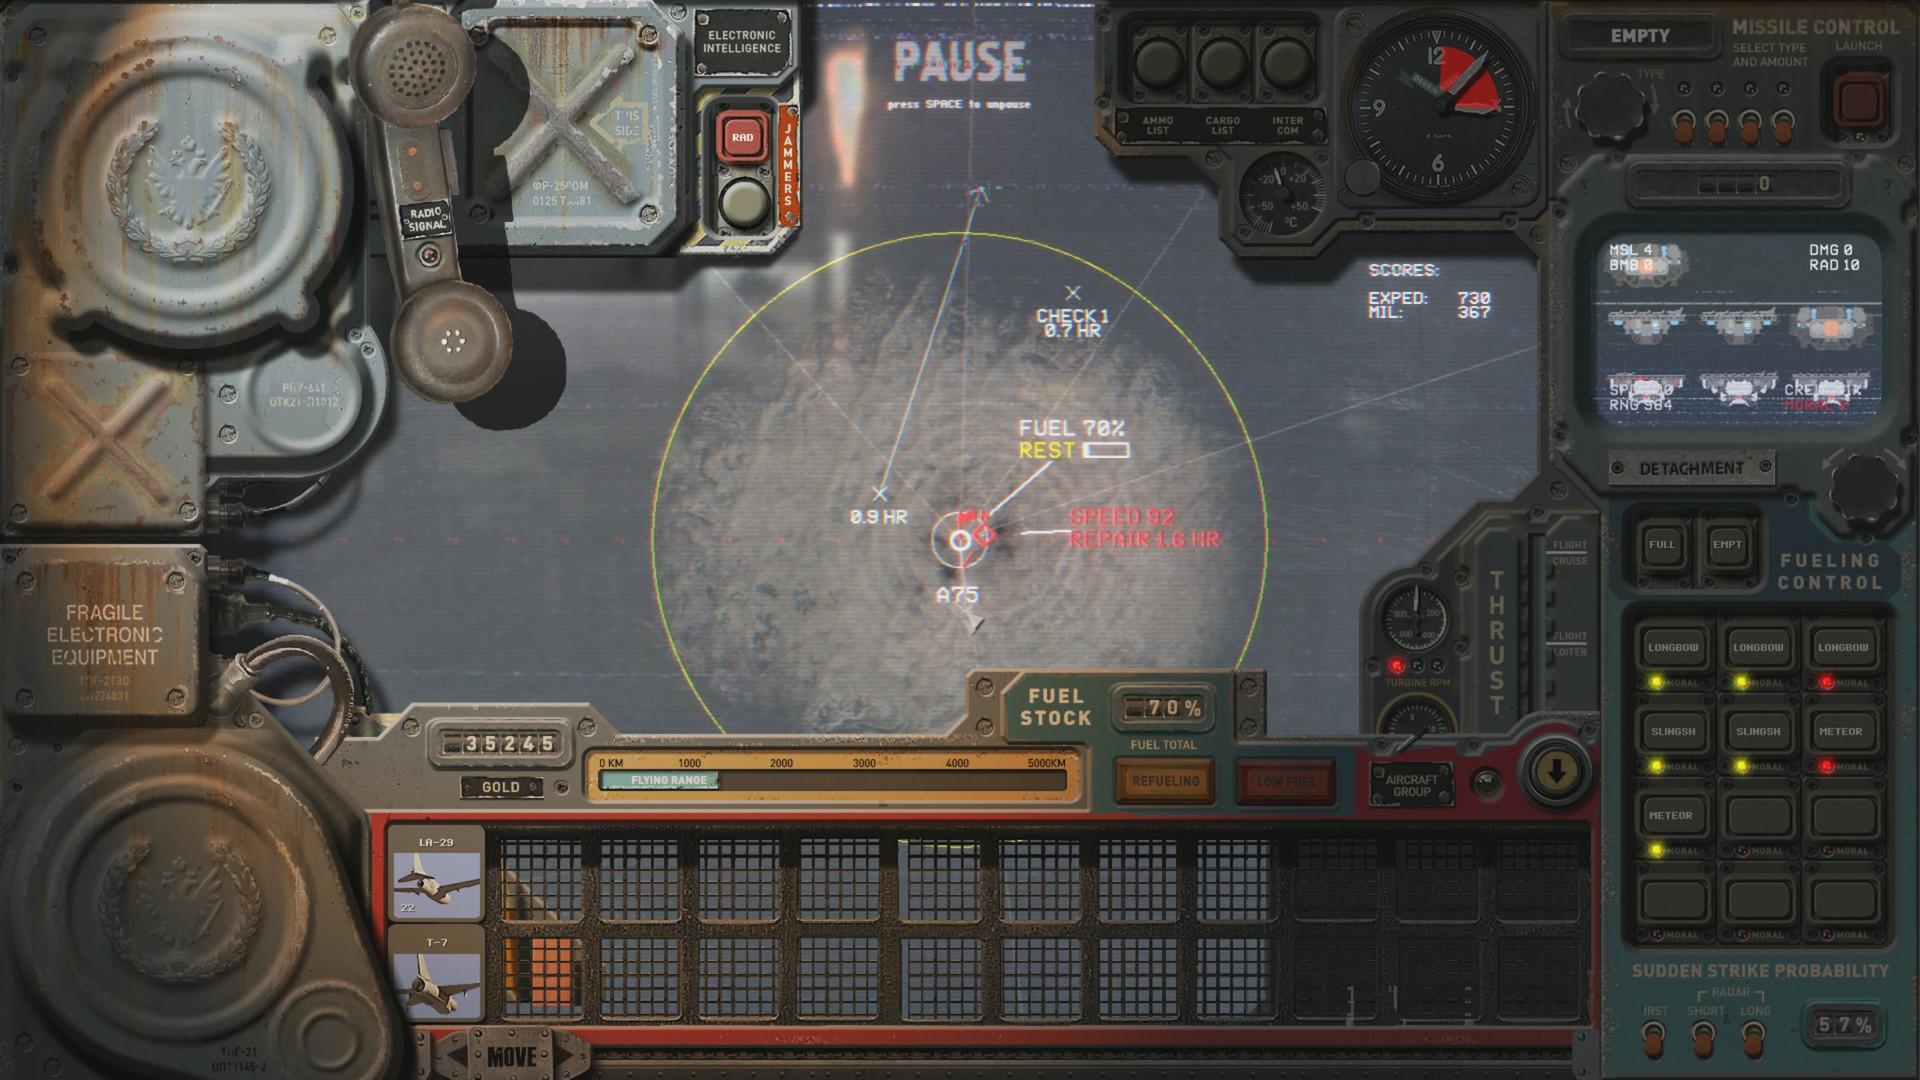 Screenshot №27 from game HighFleet